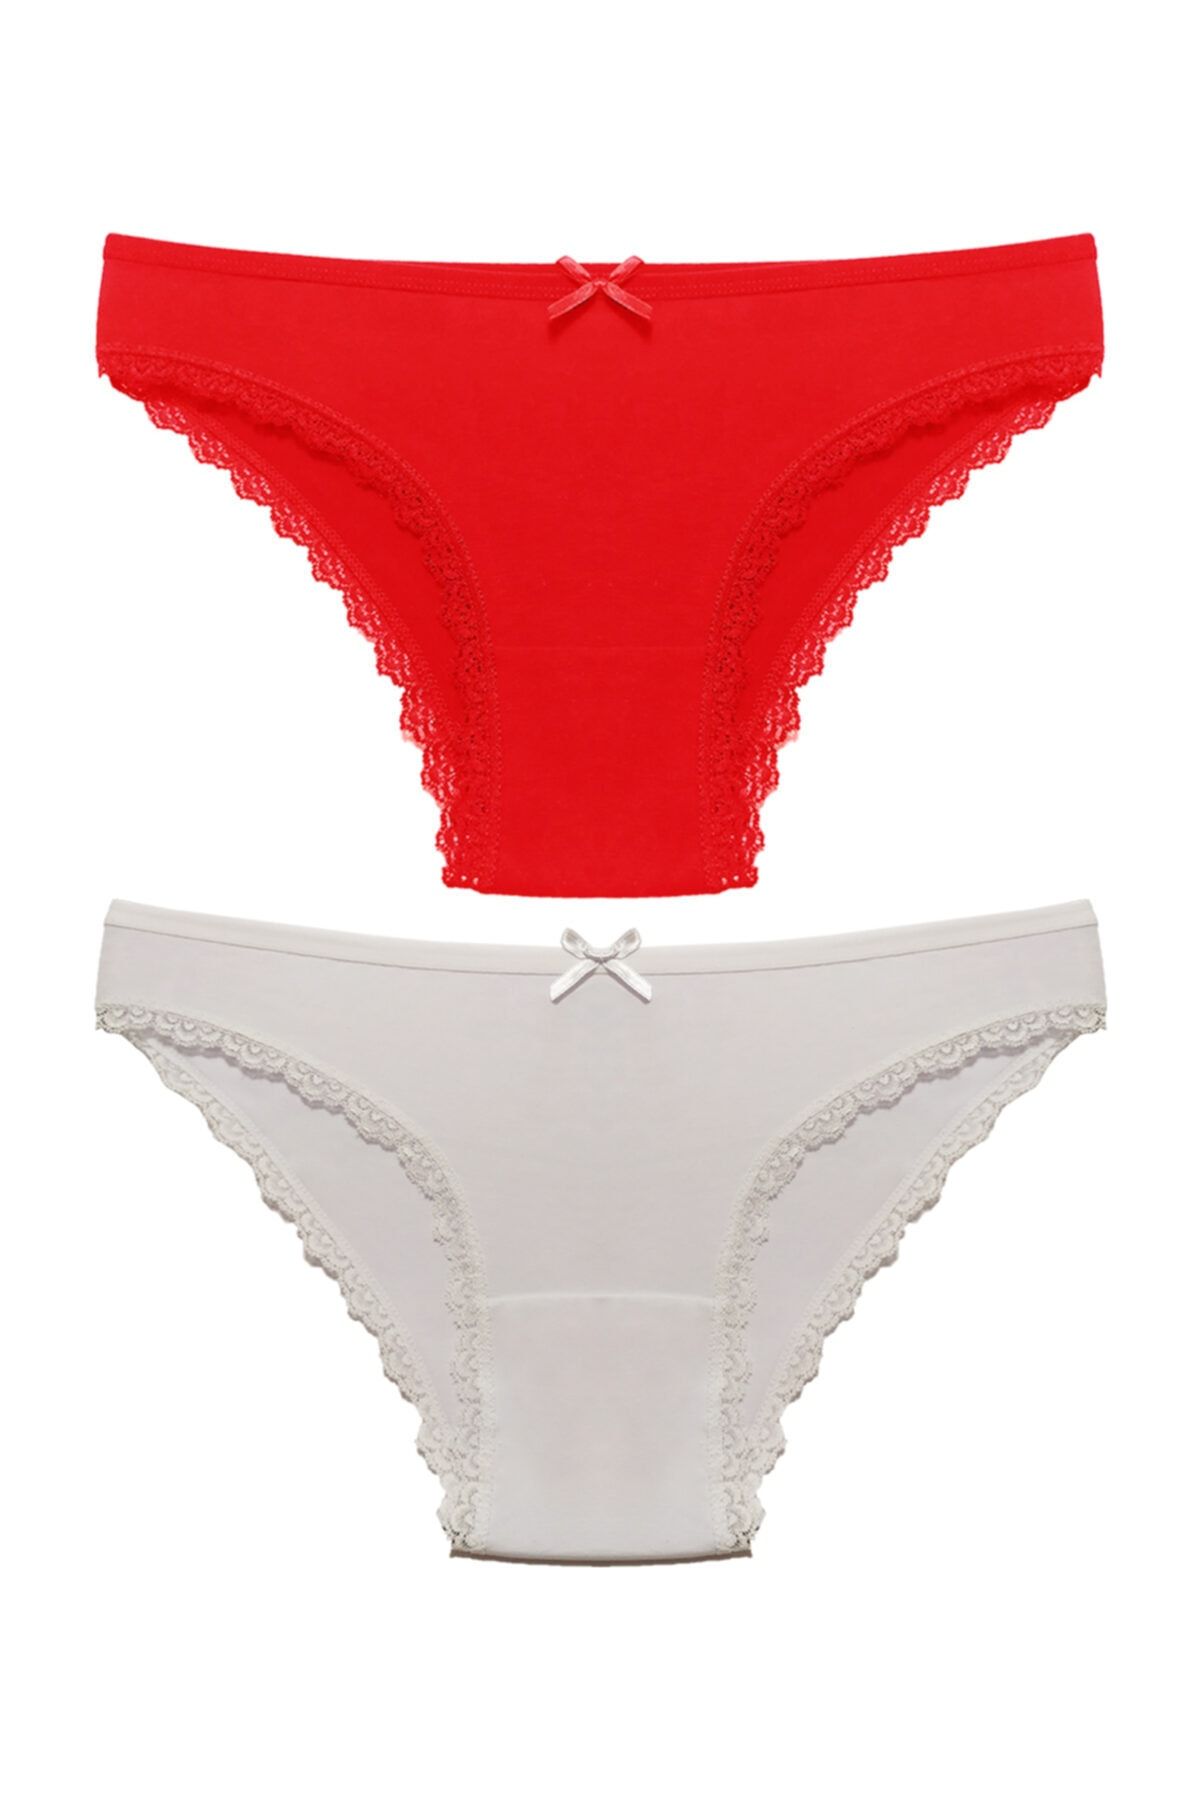 Liona 2 Li Paket Düz Renk Kenarları Dantelli M Beden Kadın Bikini Külot